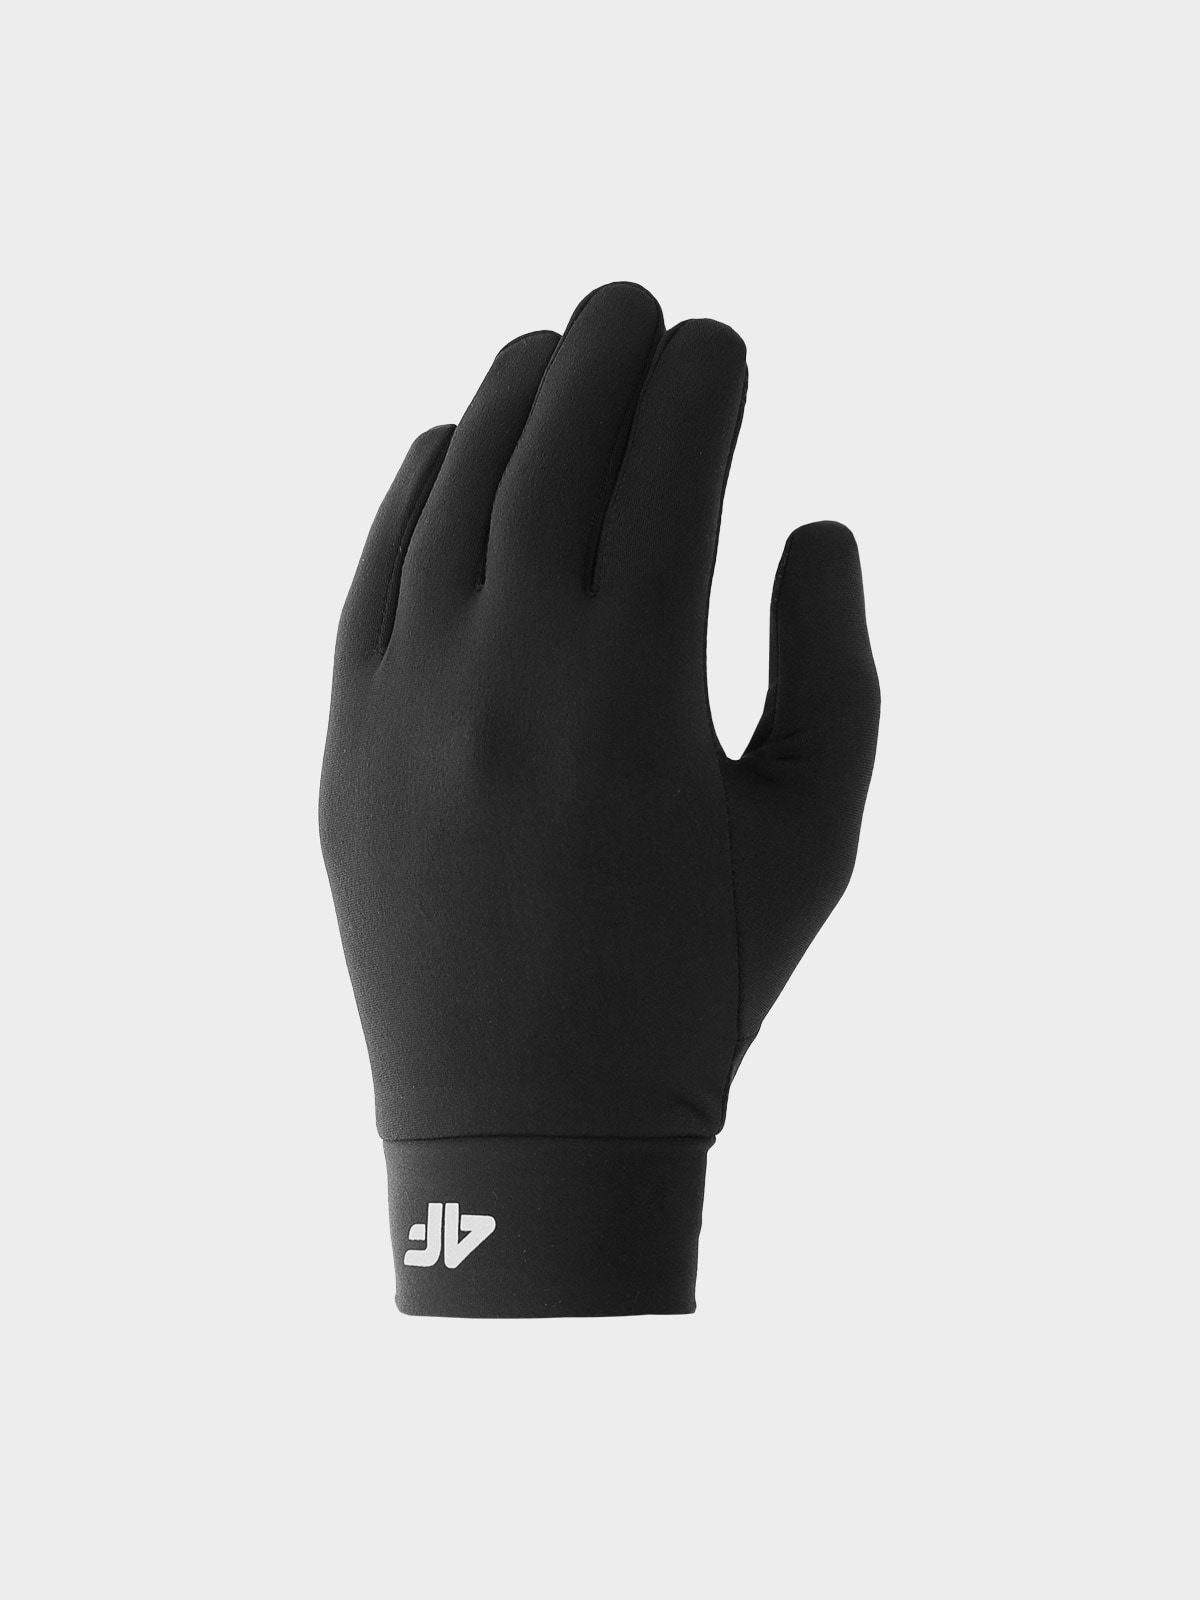 Unisex flísové rukavice Touch Screen - čierne